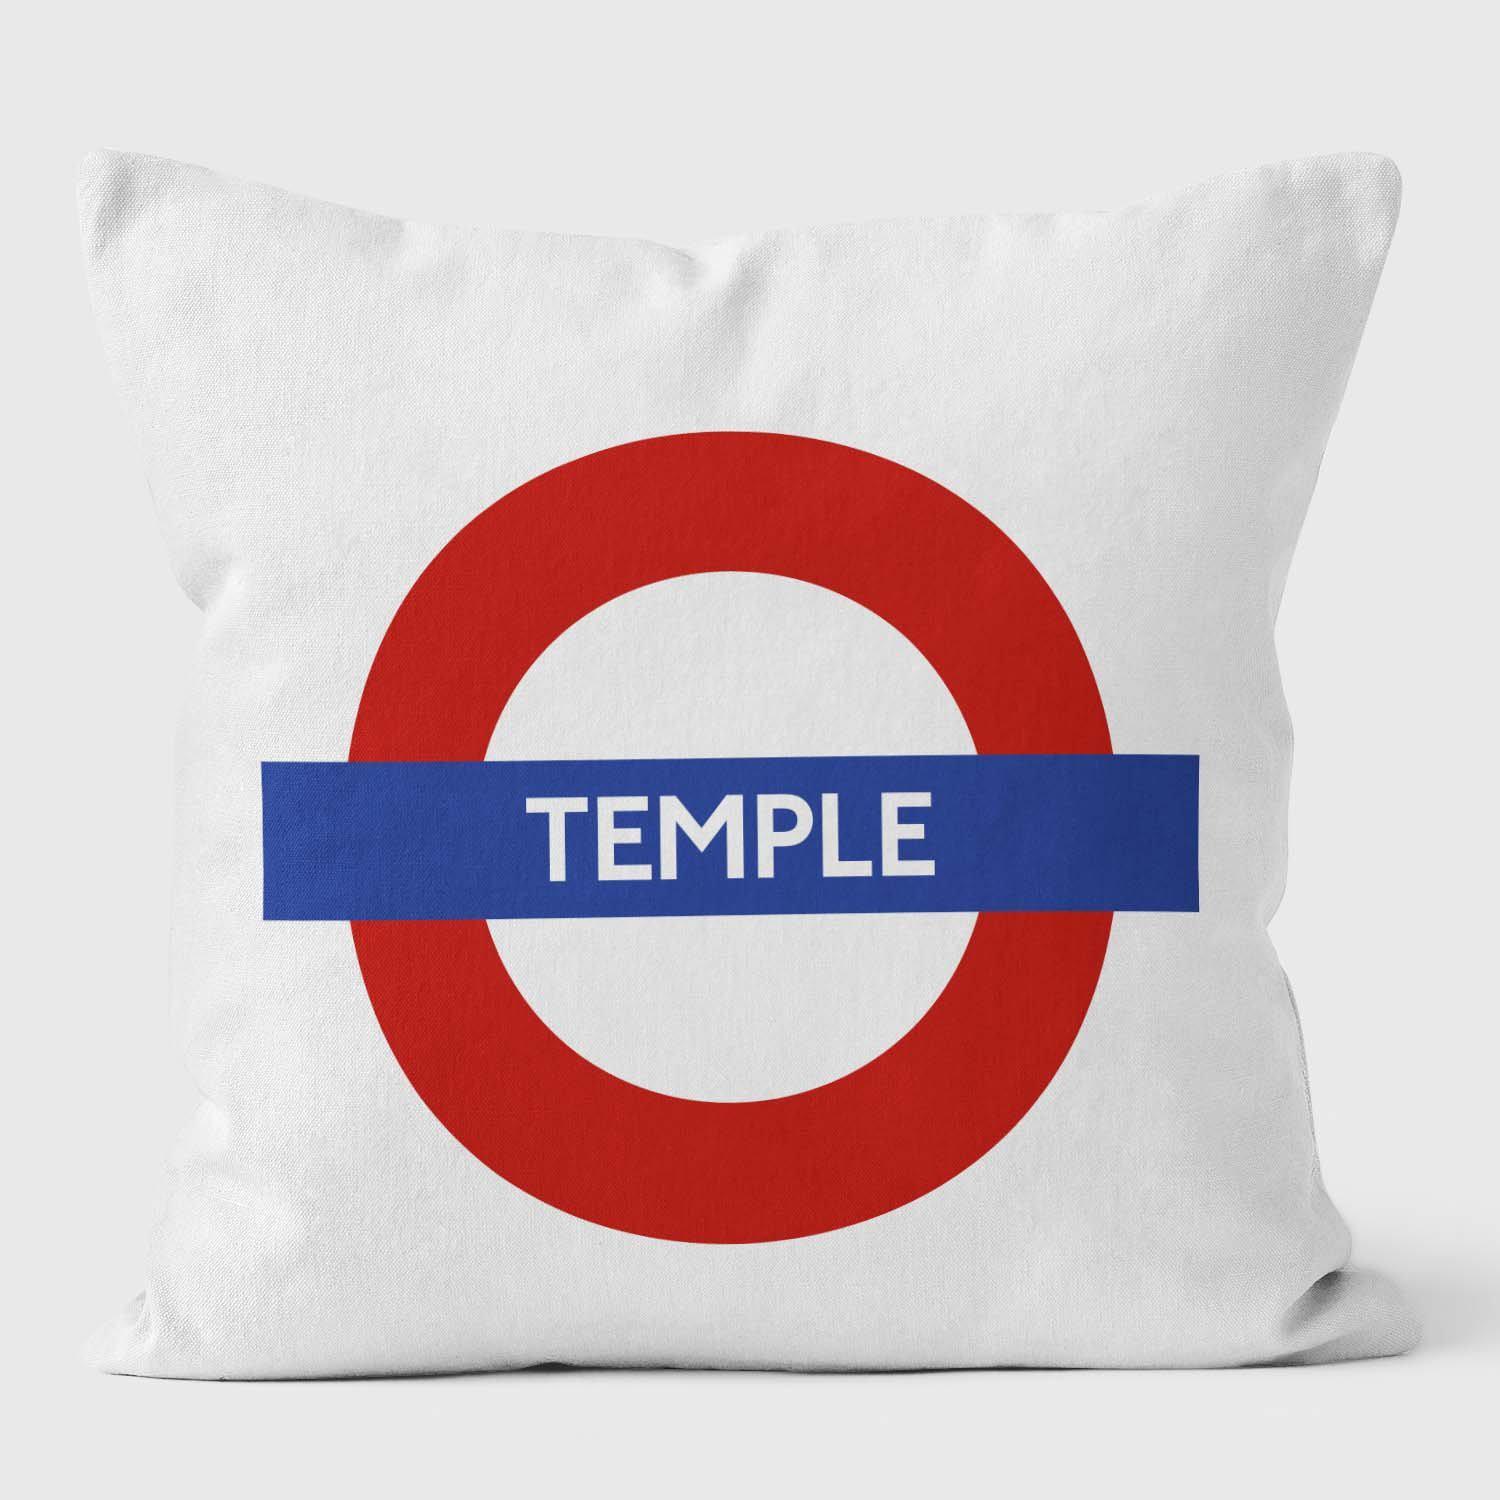 Temple London Underground Tube Station Roundel Cushion - Handmade Cushions UK - WeLoveCushions